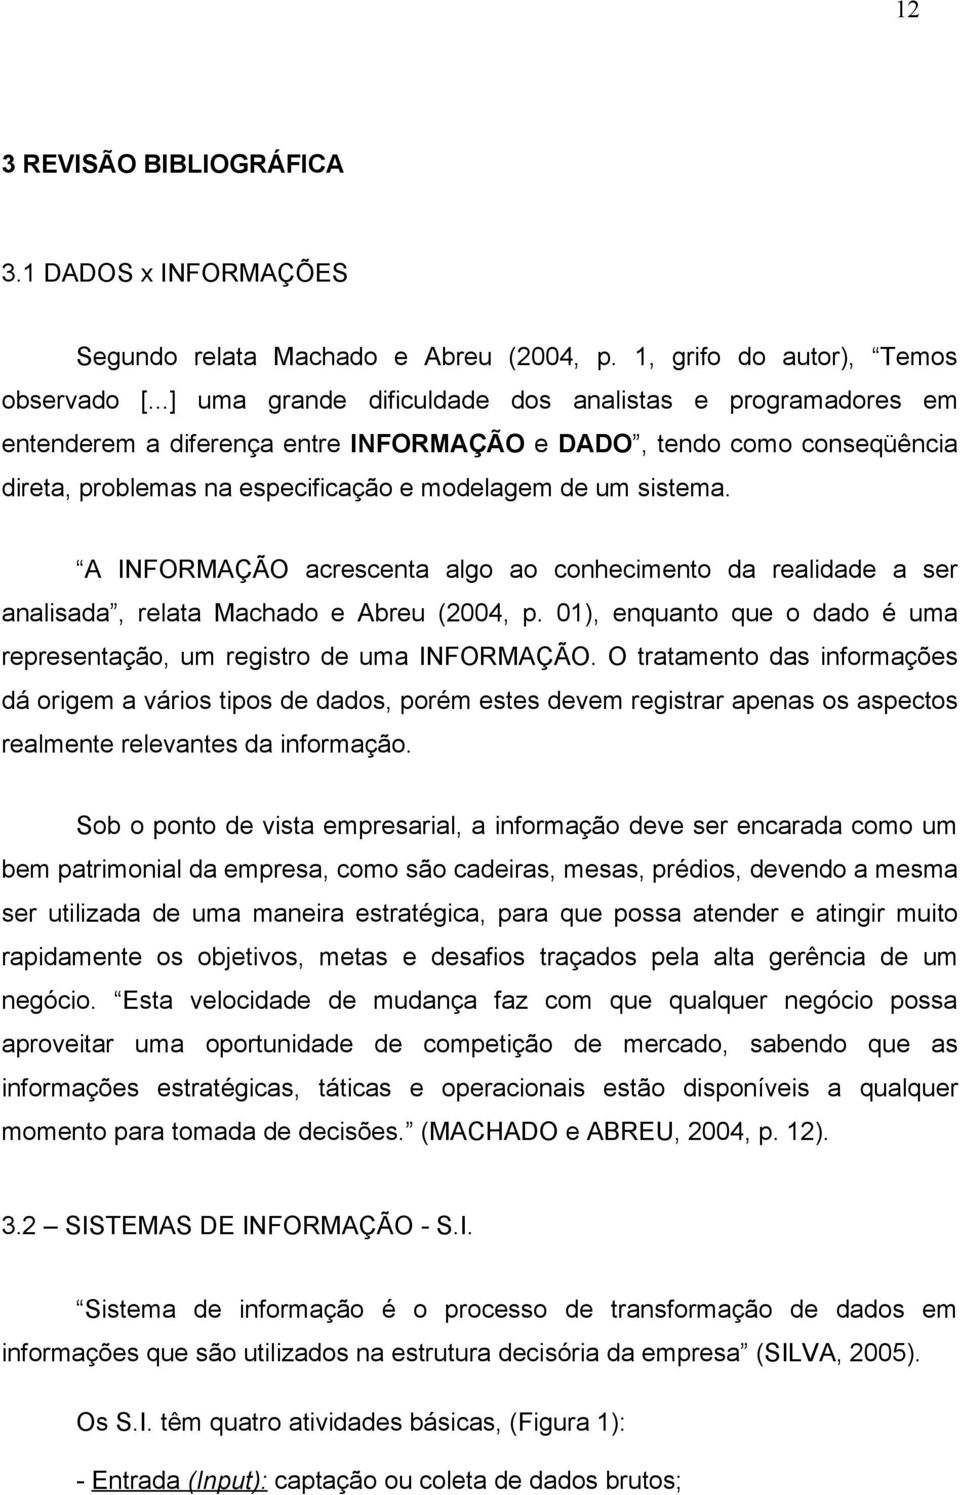 A INFORMAÇÃO acrescenta algo ao conhecimento da realidade a ser analisada, relata Machado e Abreu (2004, p. 01), enquanto que o dado é uma representação, um registro de uma INFORMAÇÃO.